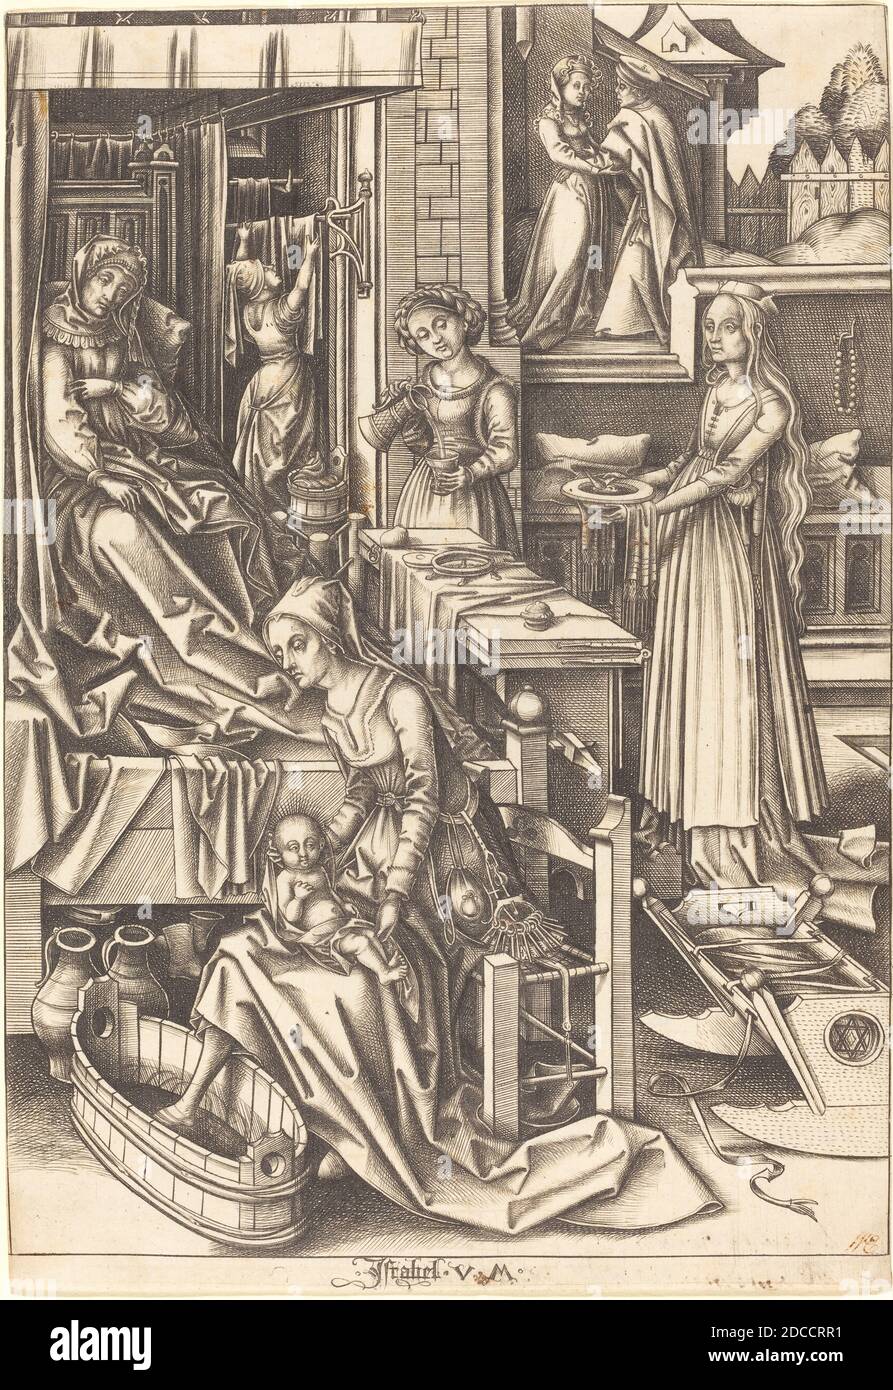 Israhel van Meckenem, (artist), German, c. 1445 - 1503, Hans Holbein the Elder, (artist after), German, c. 1465 - 1524, The Birth of the Virgin, The Life of the Virgin, (series), c. 1490/1500, engraving Stock Photo